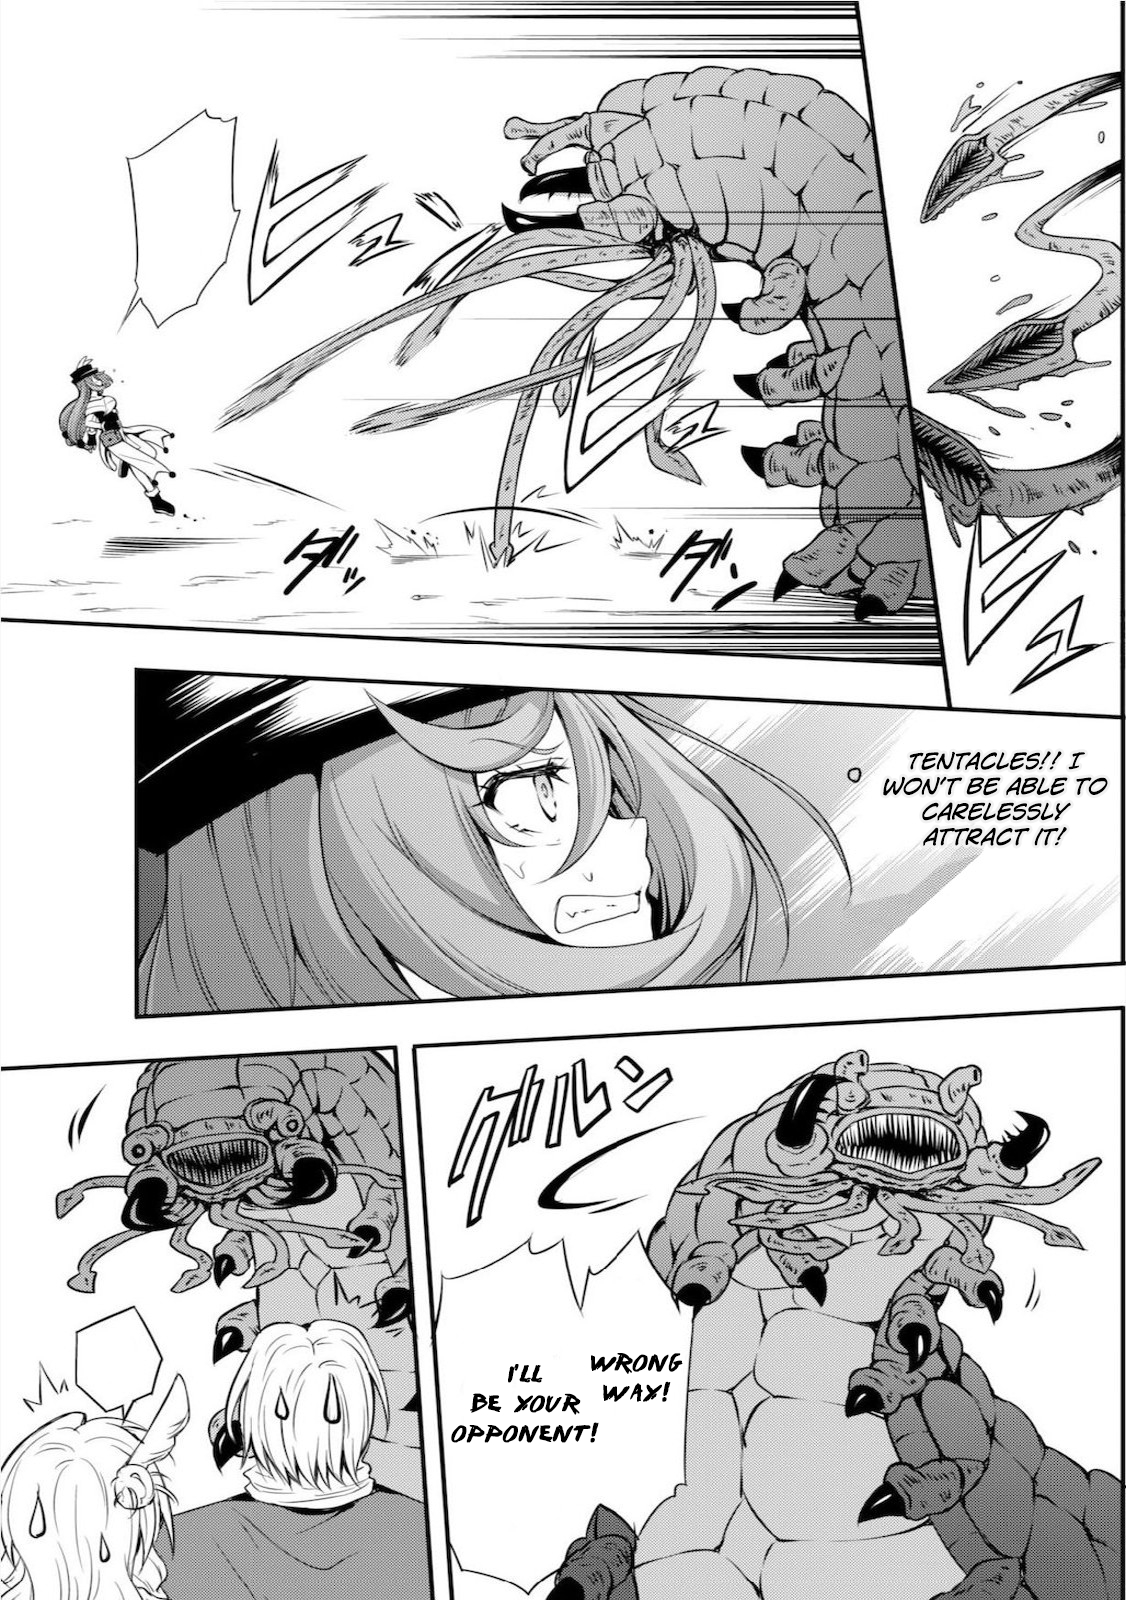 Tensei Shitara Slime Datta Ken: Mamono no Kuni no Arukikata Vol. 1 Ch. 4